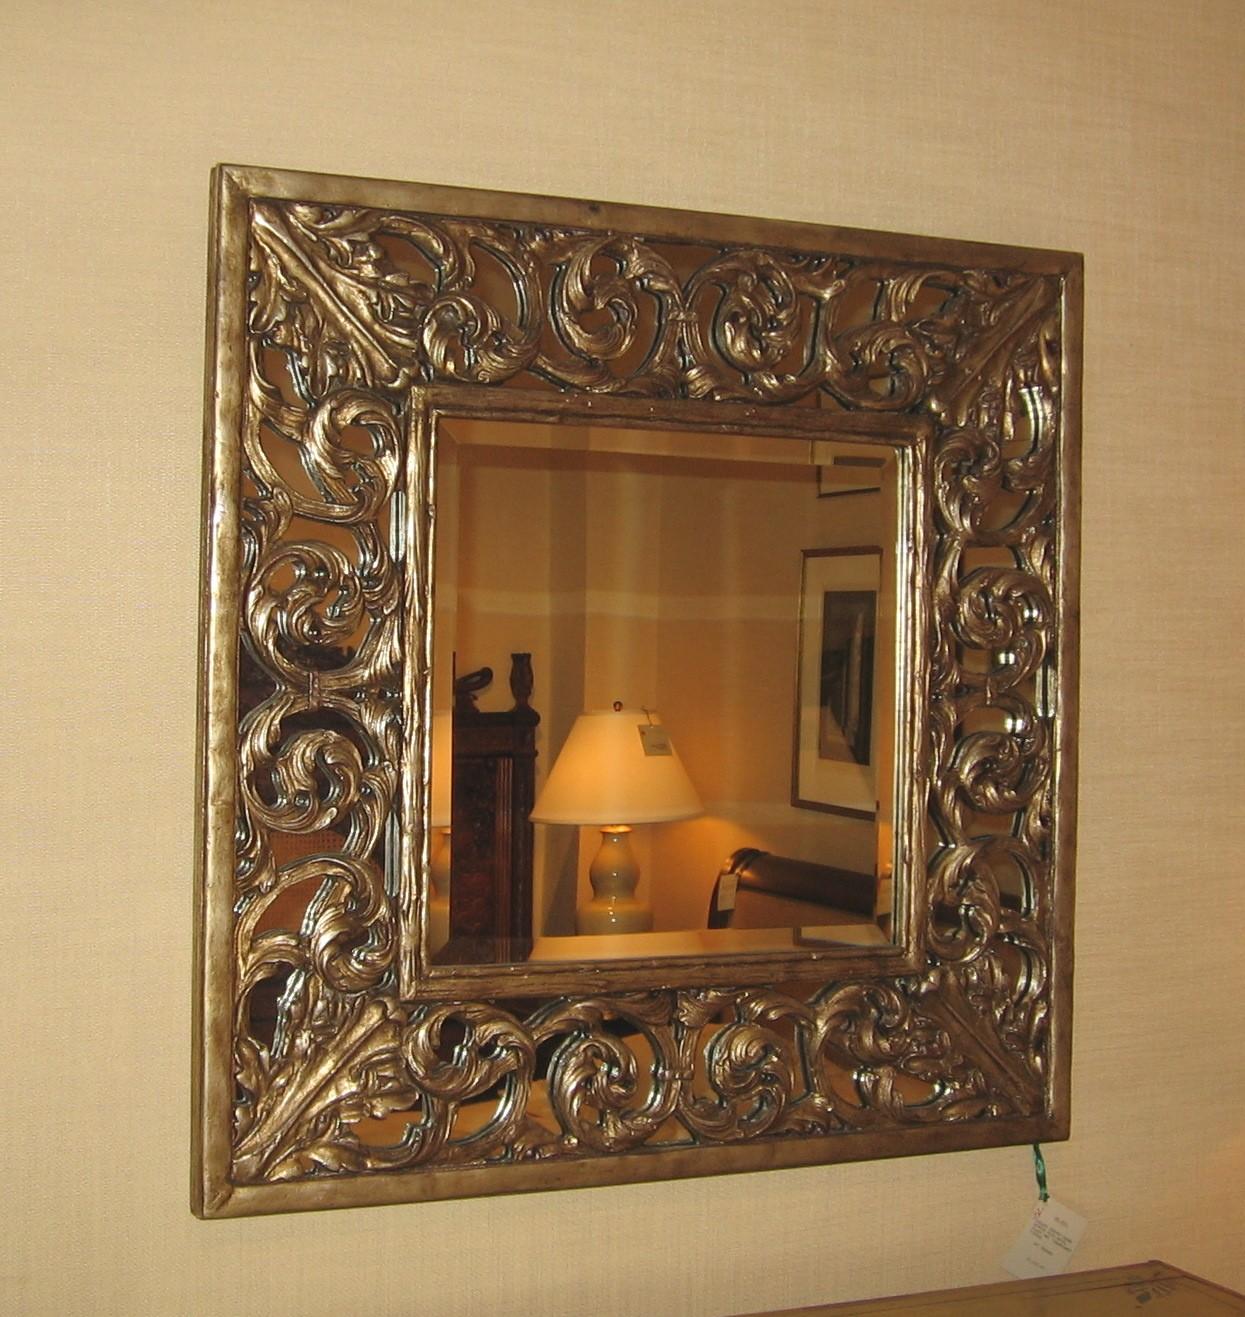 Ravissant et élégant miroir carré en bois de style transitionnel avec cadre sculpté basé sur un treillis filigrane de plumes enroulées avec une finition peinte champêtre et un miroir en biseau.  

36